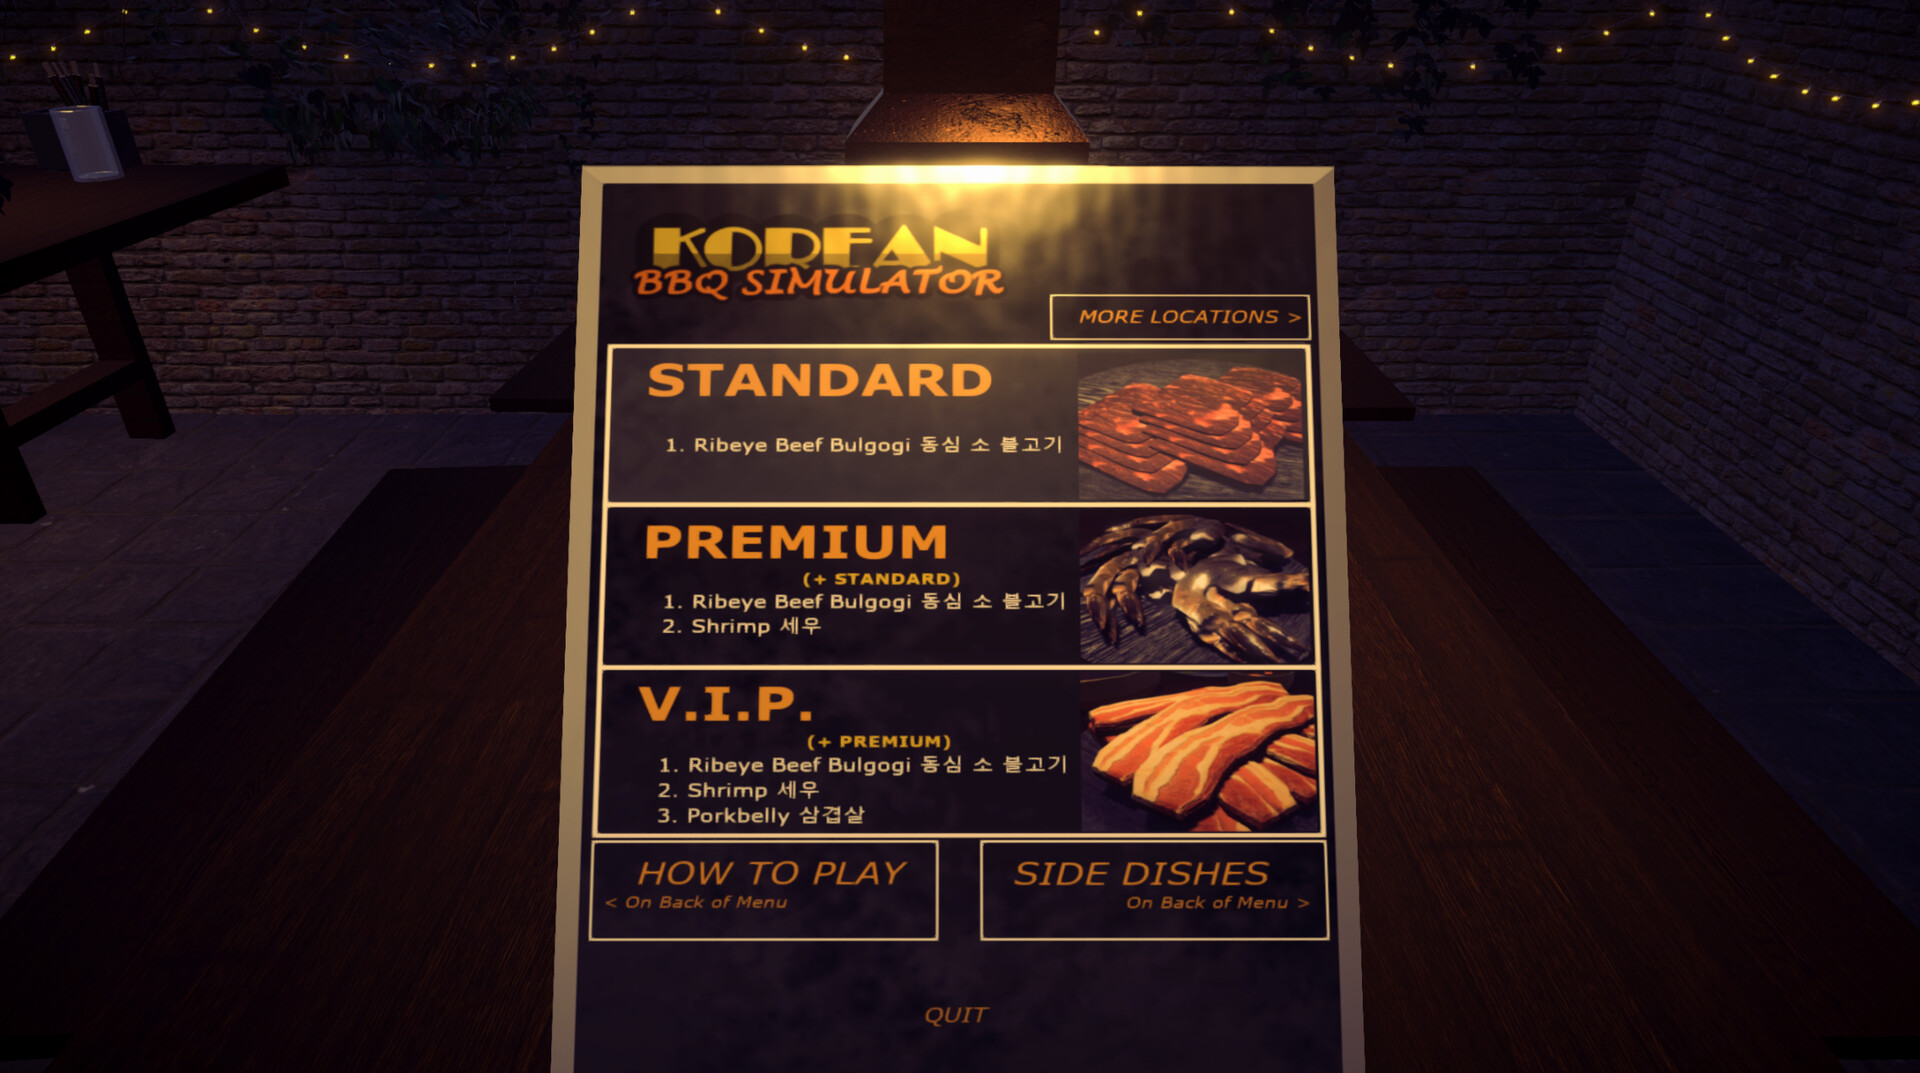 Korean BBQ Simulator Steam CD Key, $4.42